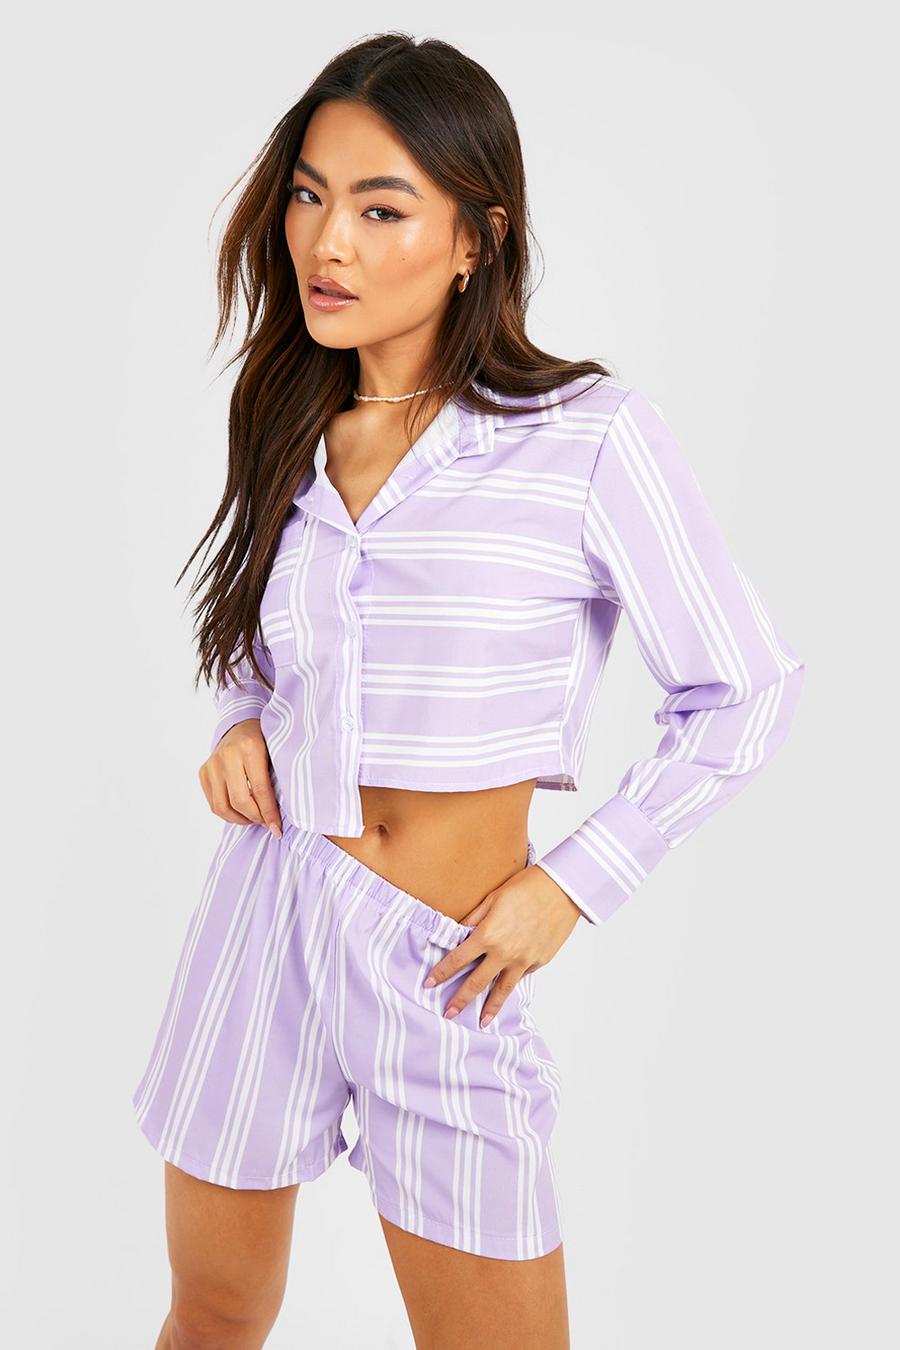 Camicia rilassata corta a righe a contrasto & pantaloncini, Lilac purple